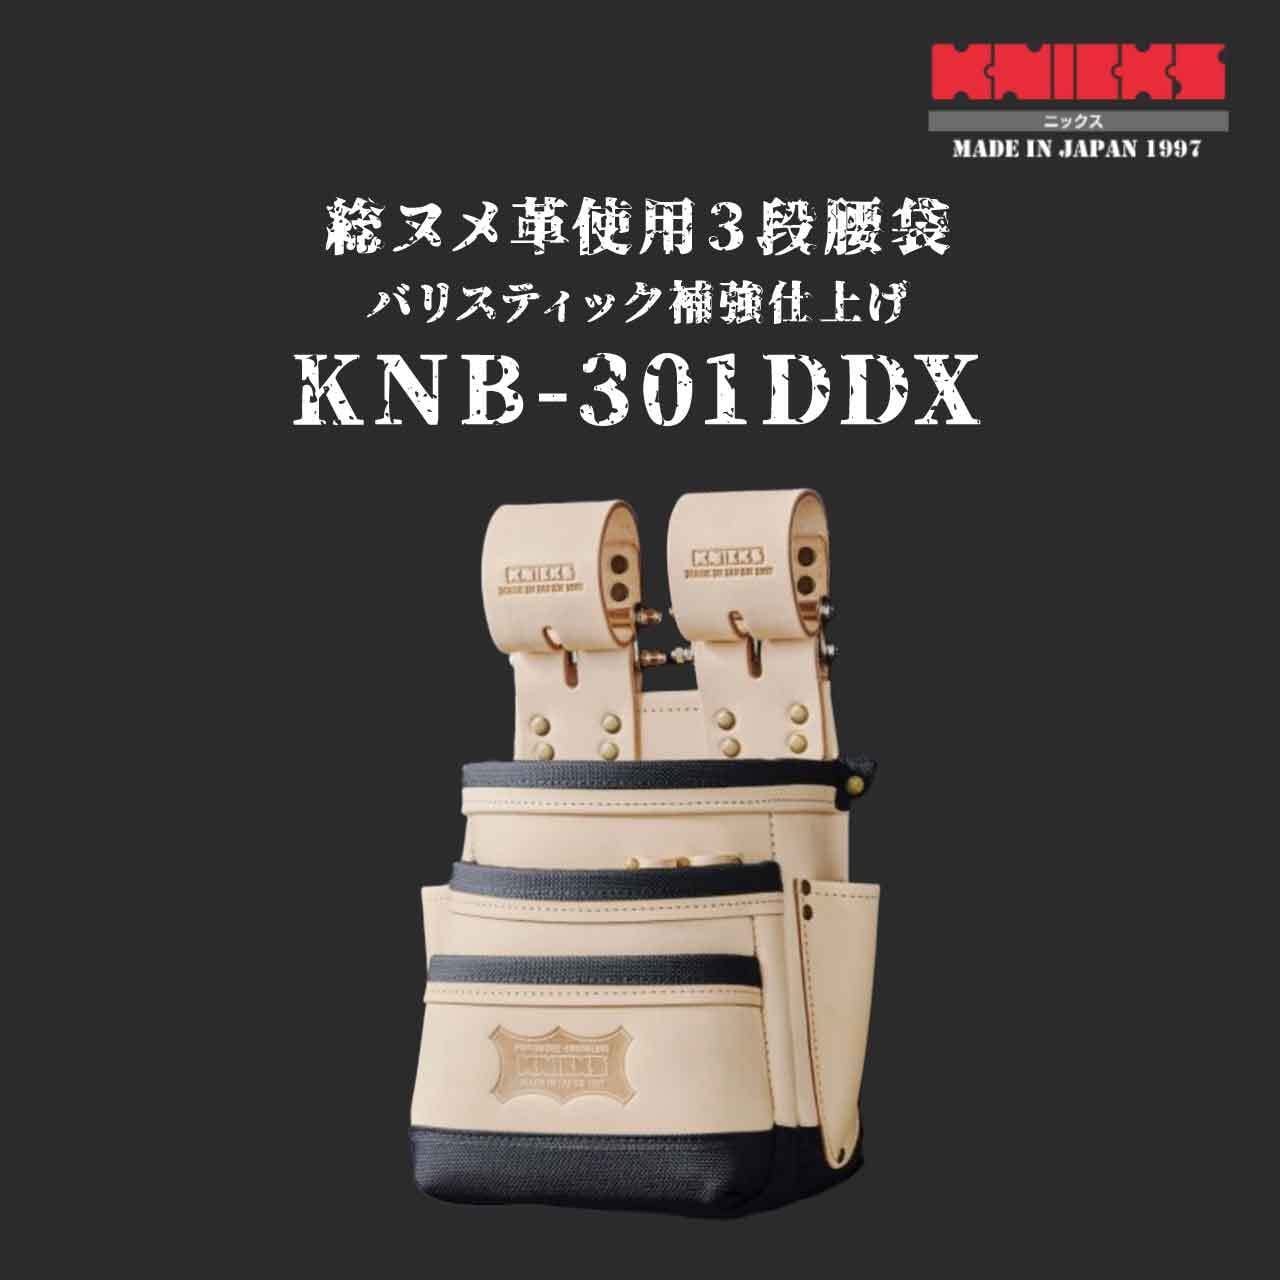 レビュー高評価のおせち贈り物 DAストアニックス 総ヌメ革使用 3段腰袋 バリスティック補強仕上げ KNB-301DDX ベージュ 